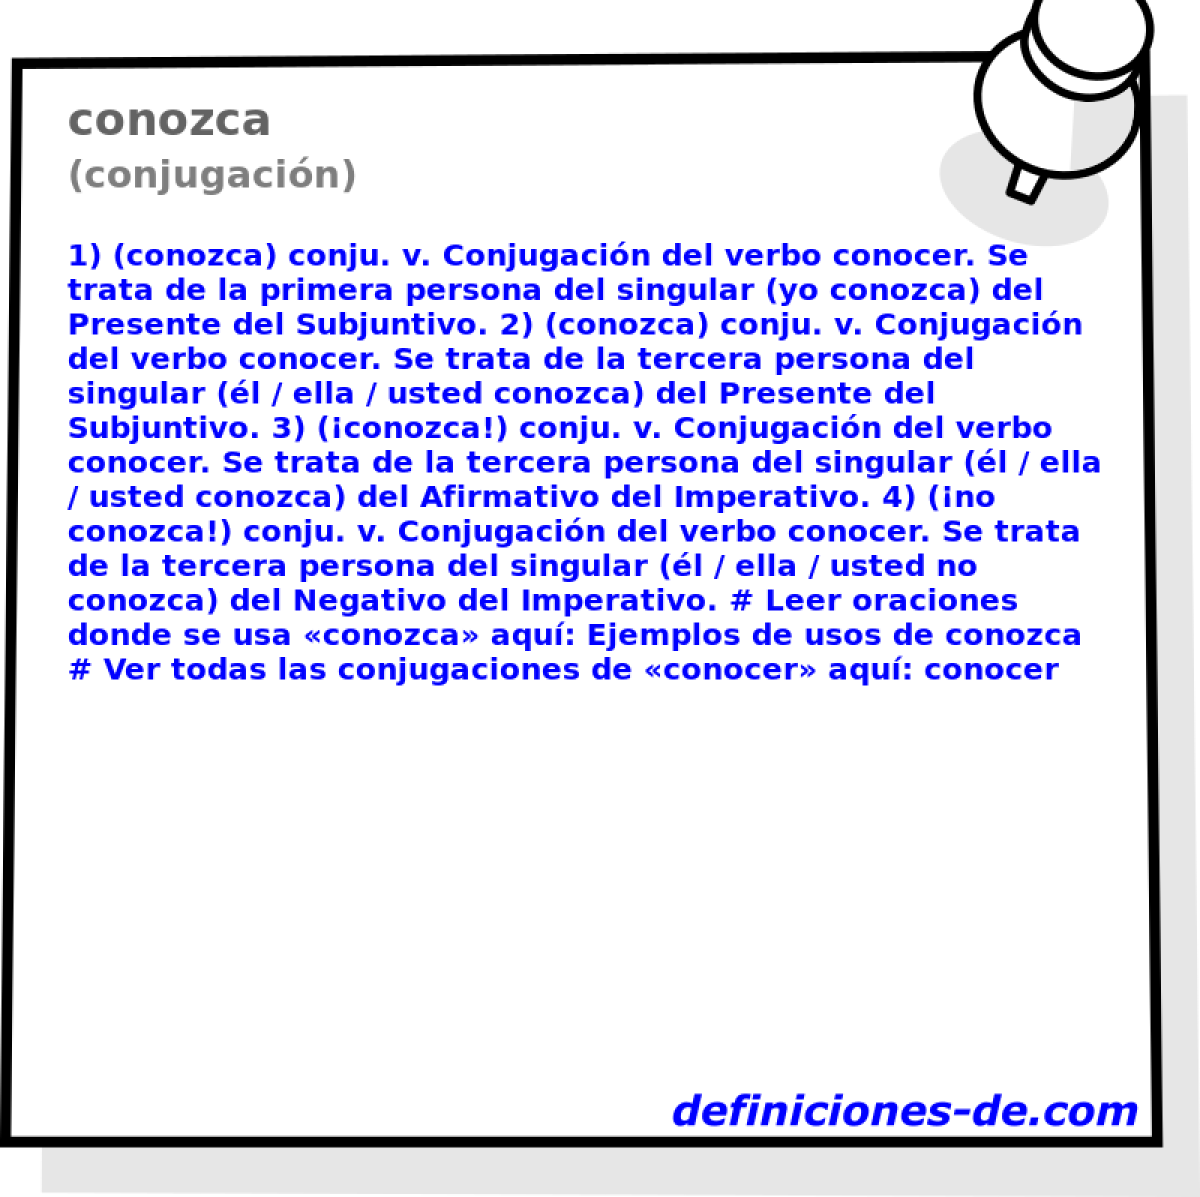 conozca (conjugacin)